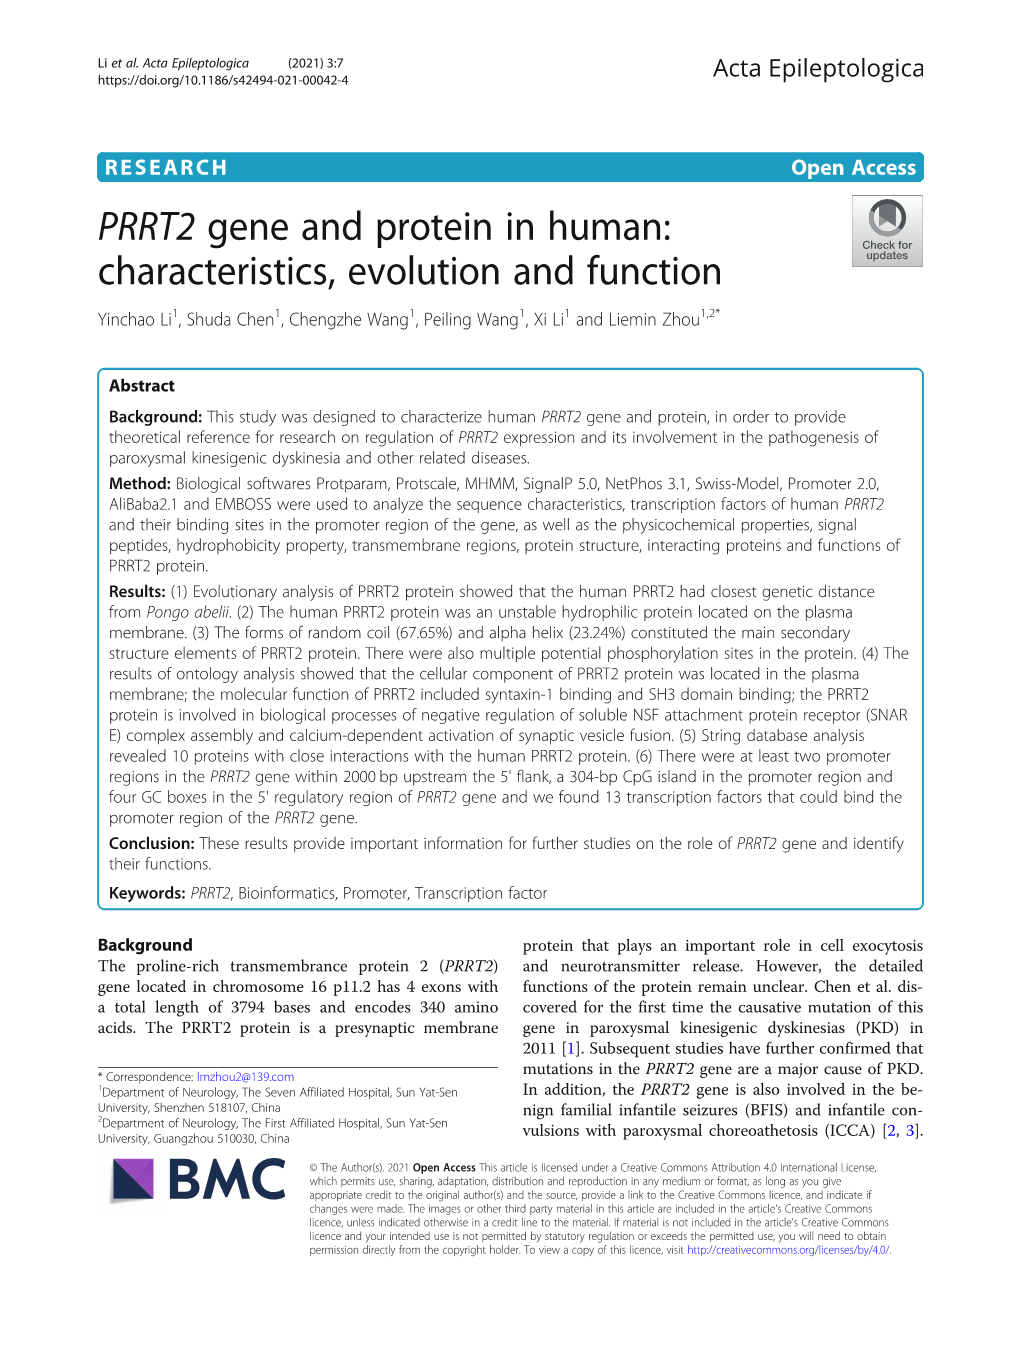 PRRT2 Gene and Protein in Human: Characteristics, Evolution and Function Yinchao Li1, Shuda Chen1, Chengzhe Wang1, Peiling Wang1,Xili1 and Liemin Zhou1,2*